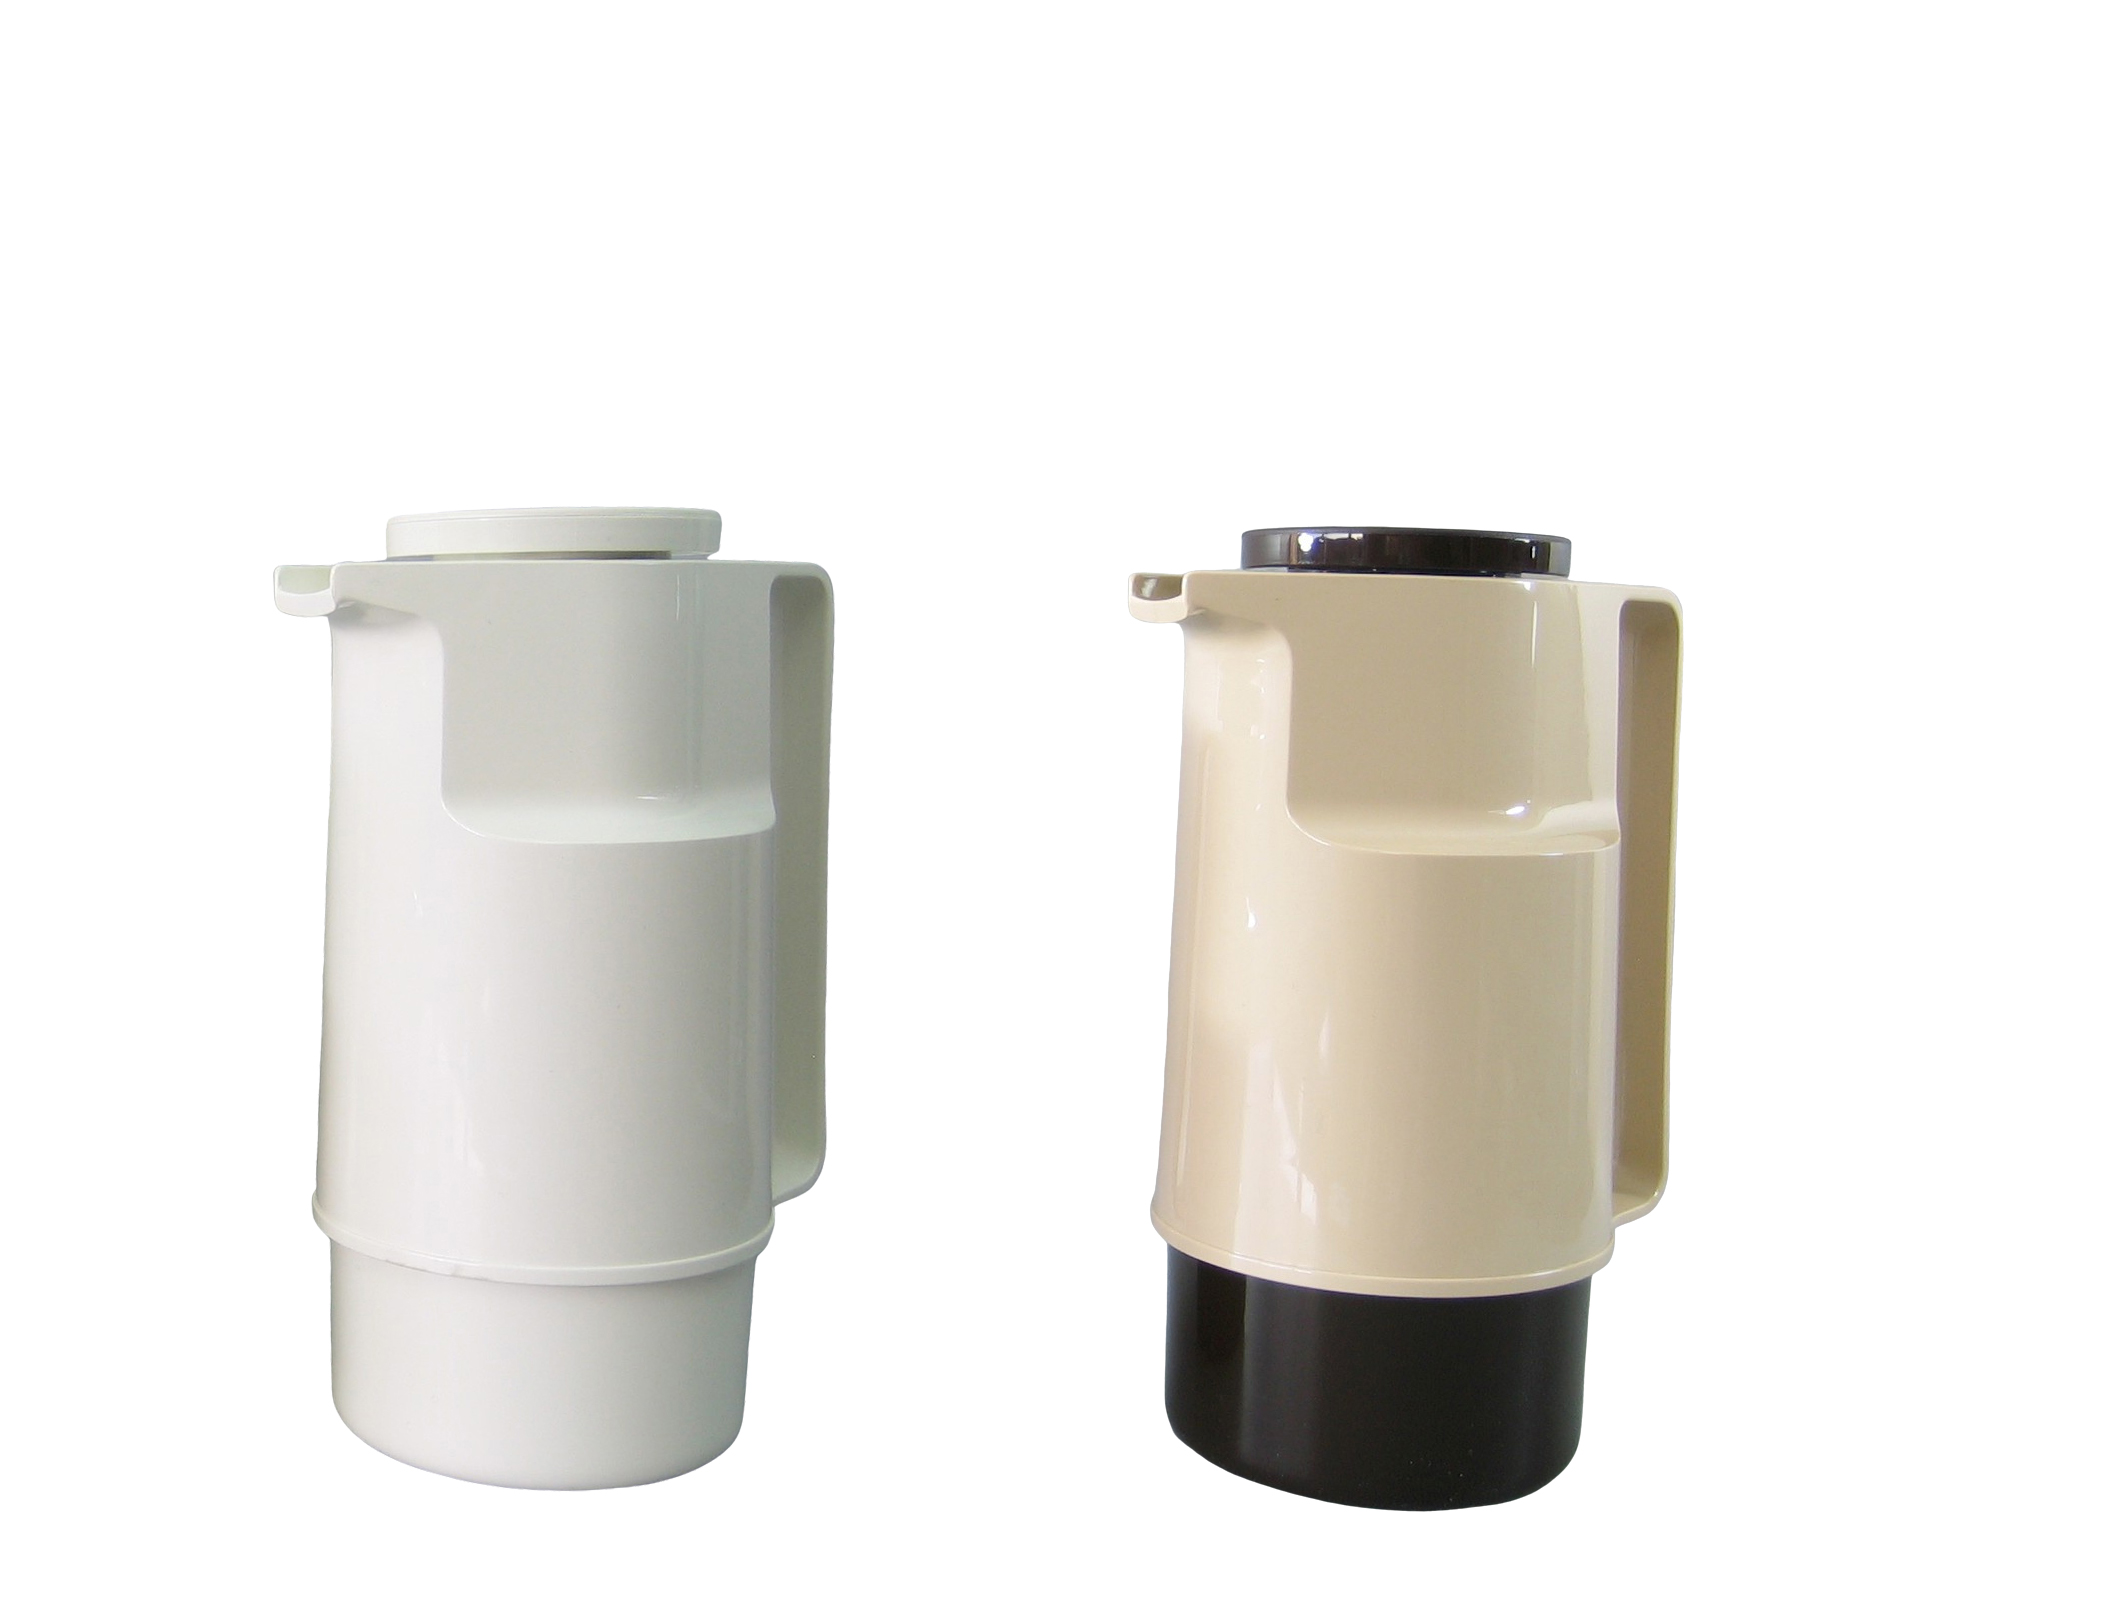 210-001 - Vacuum carafe ABS white 1.0 L - Isobel